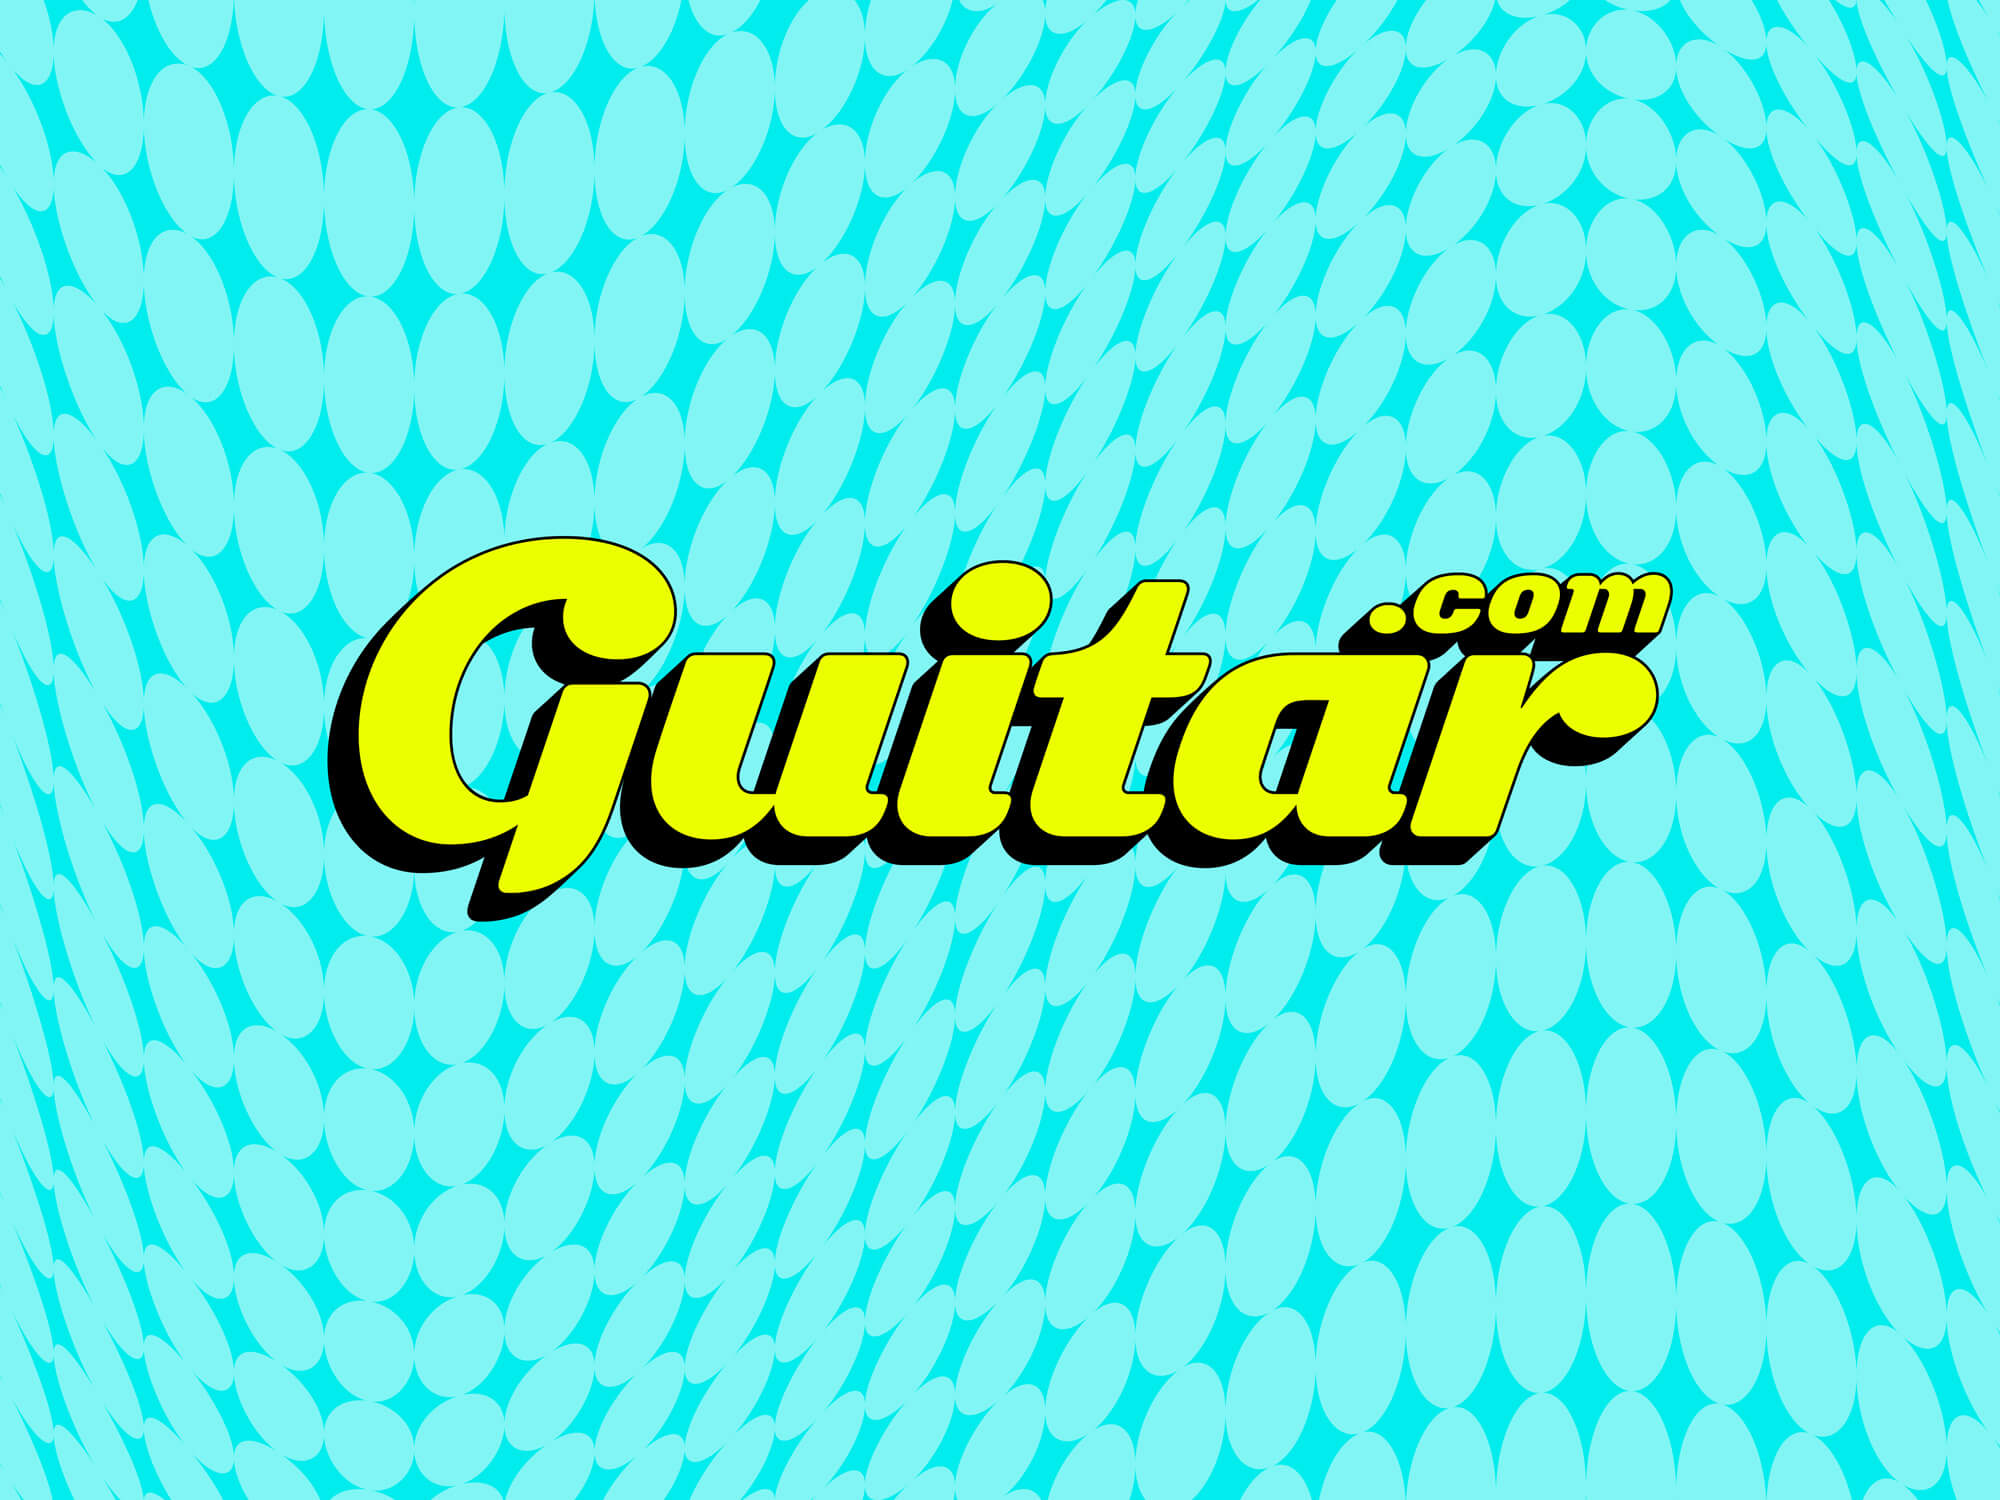 Guitar.com new logo